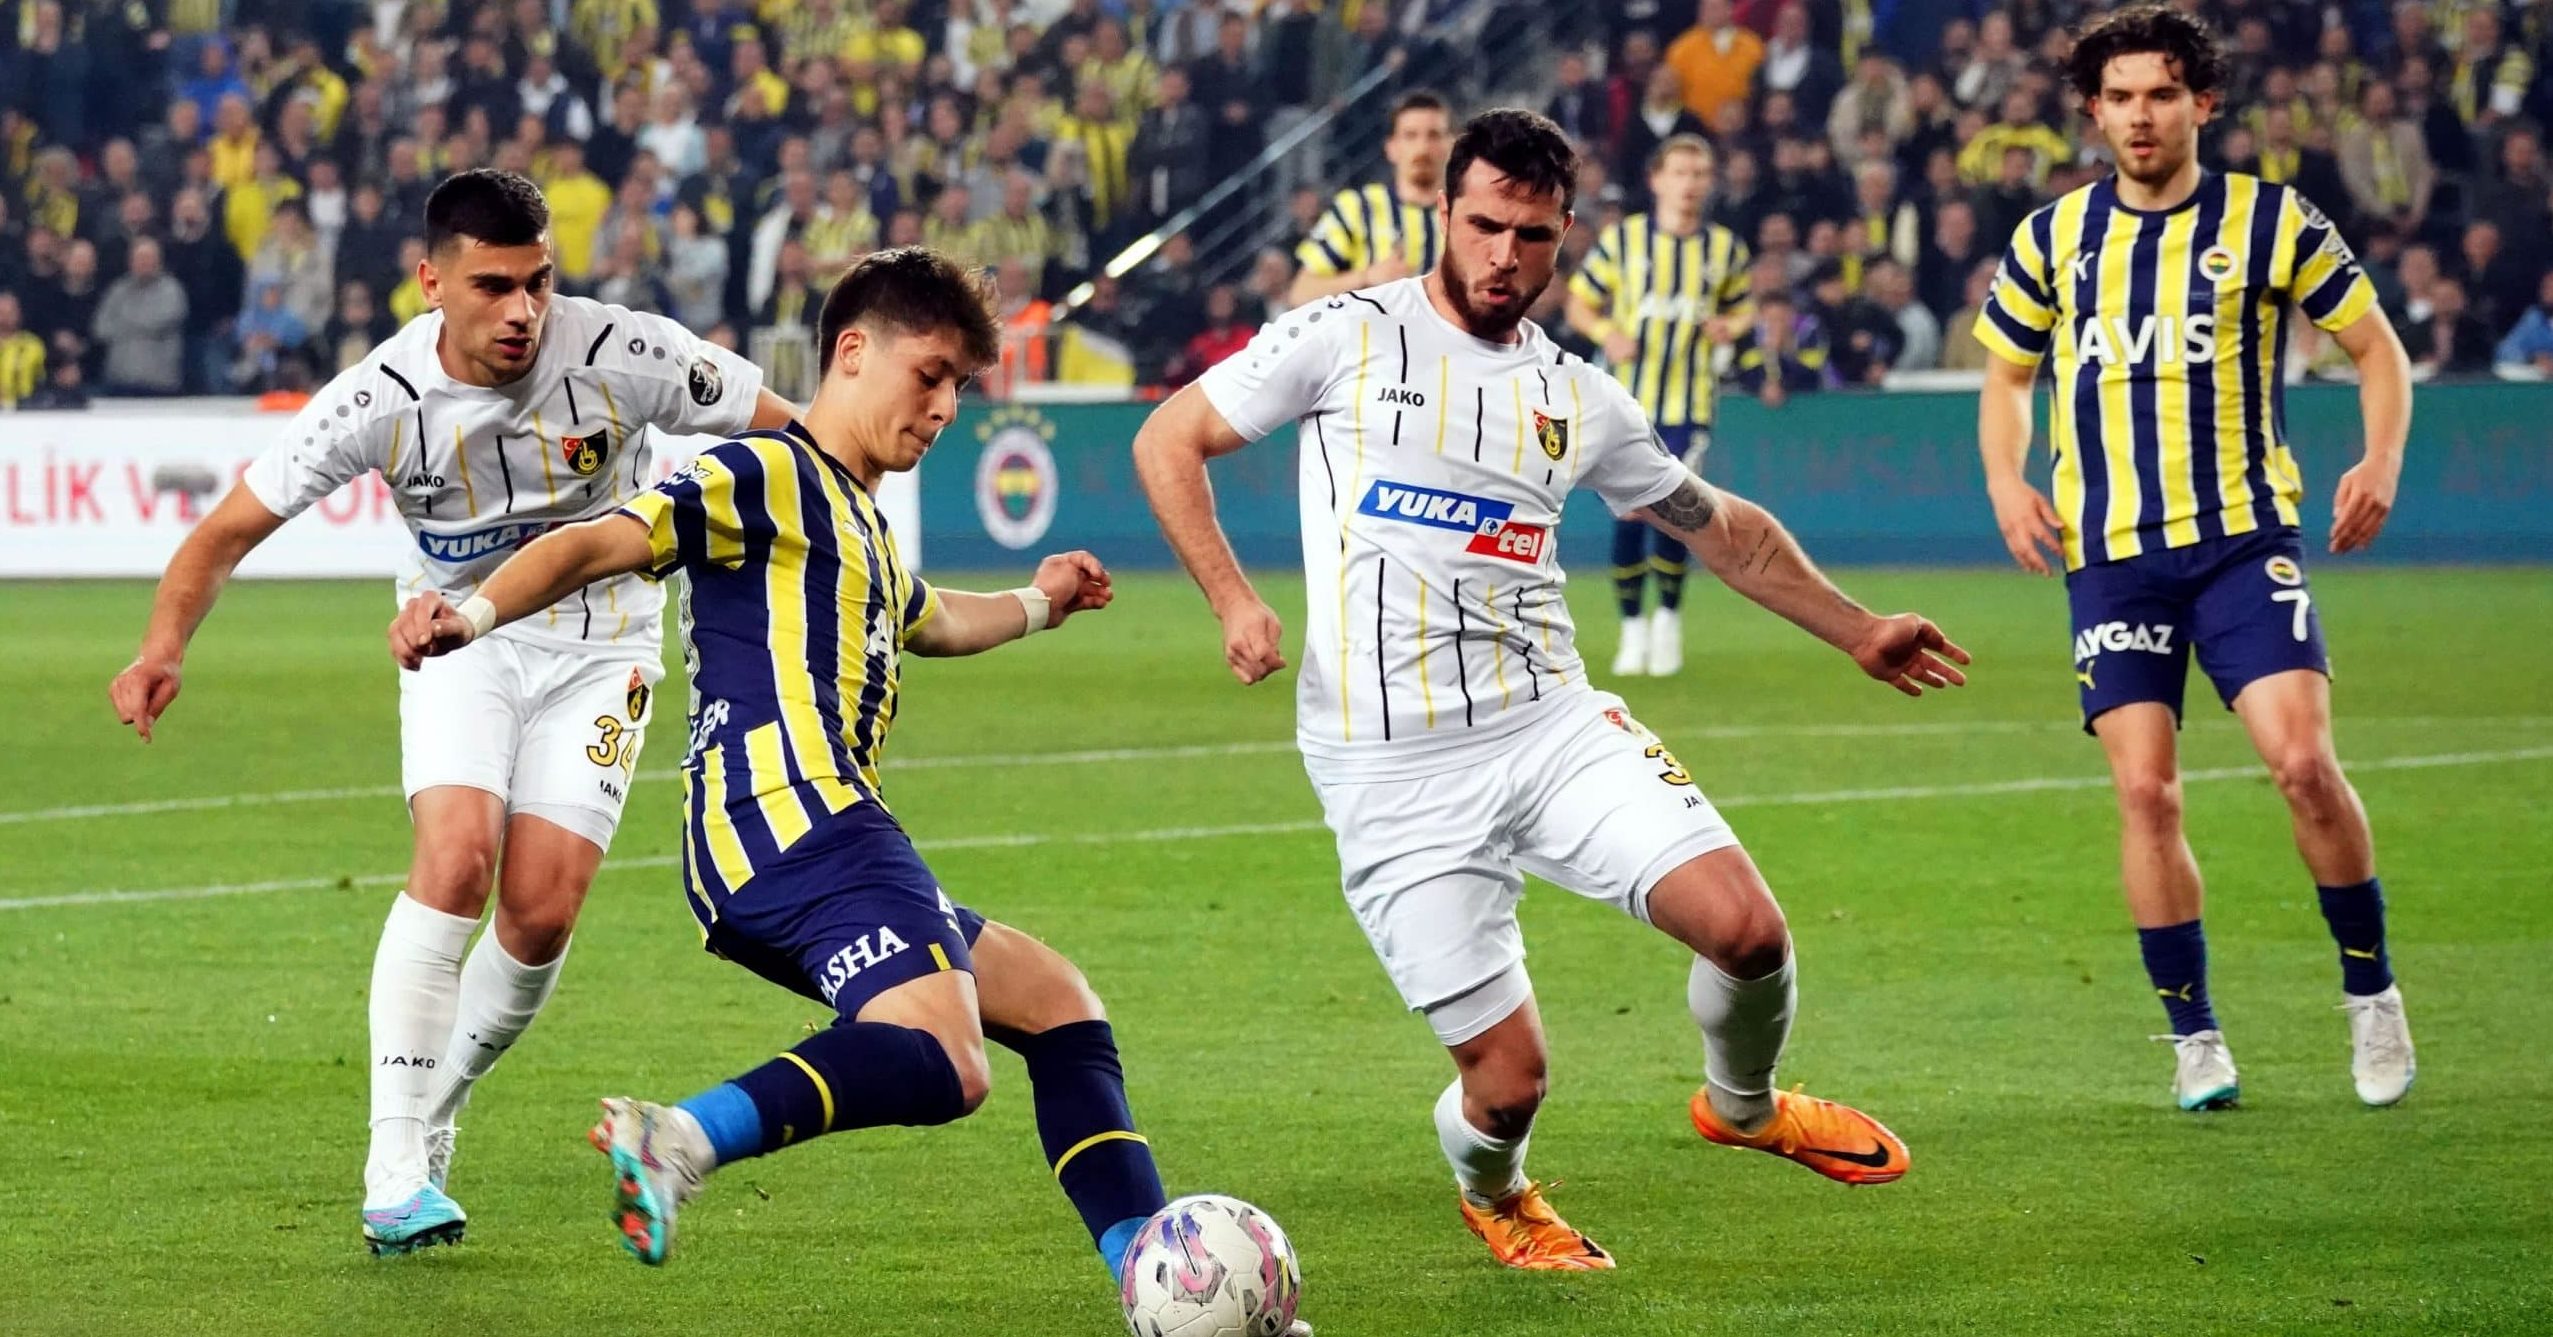 Fenerbahçe vs Zenit: A Clash of Titans